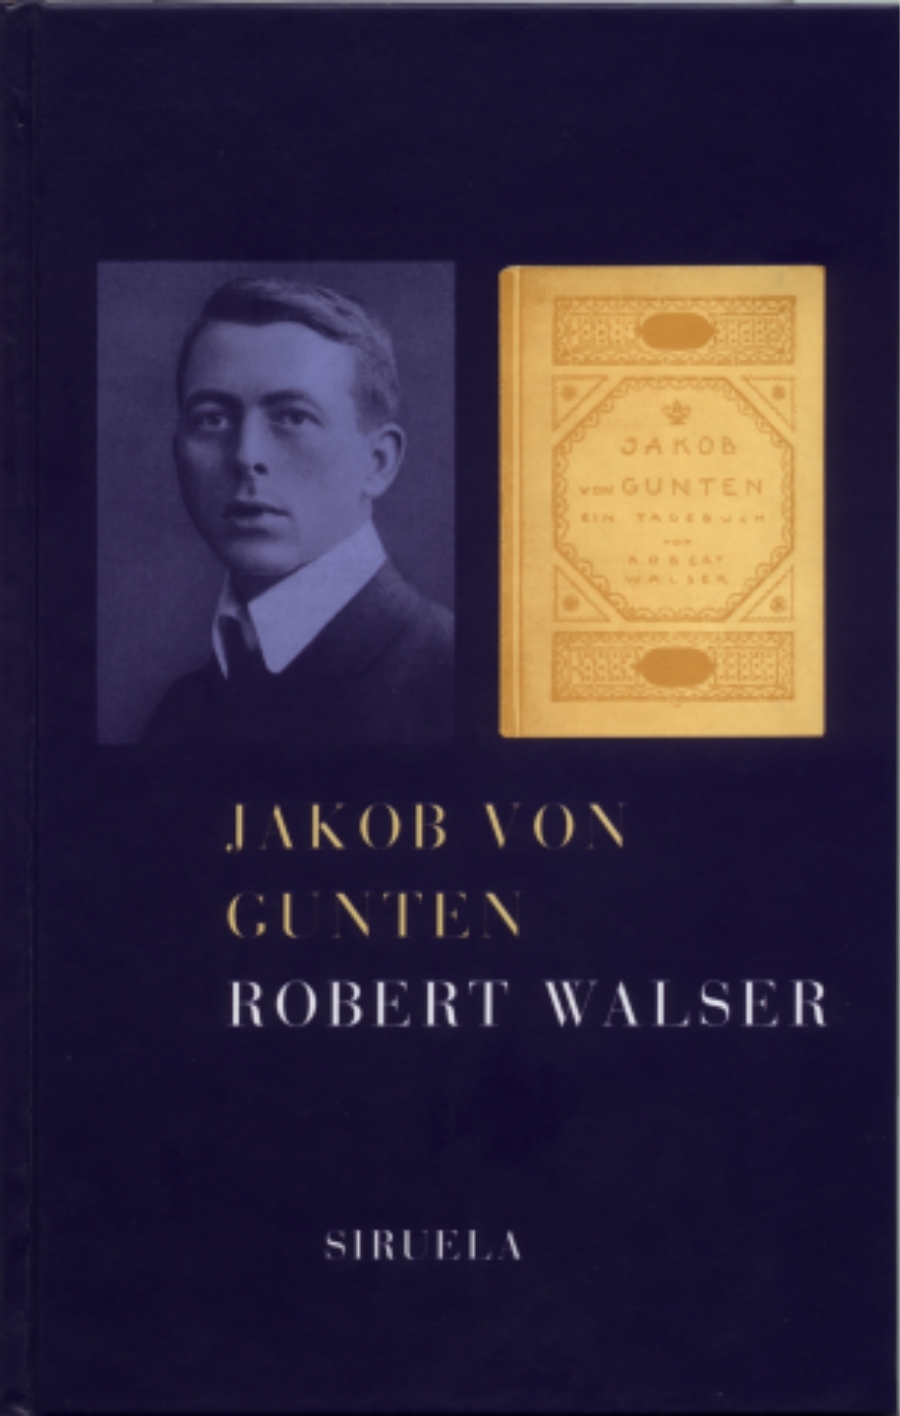 imagen 2 de Paseando con Walser y Jakob von Gunten.